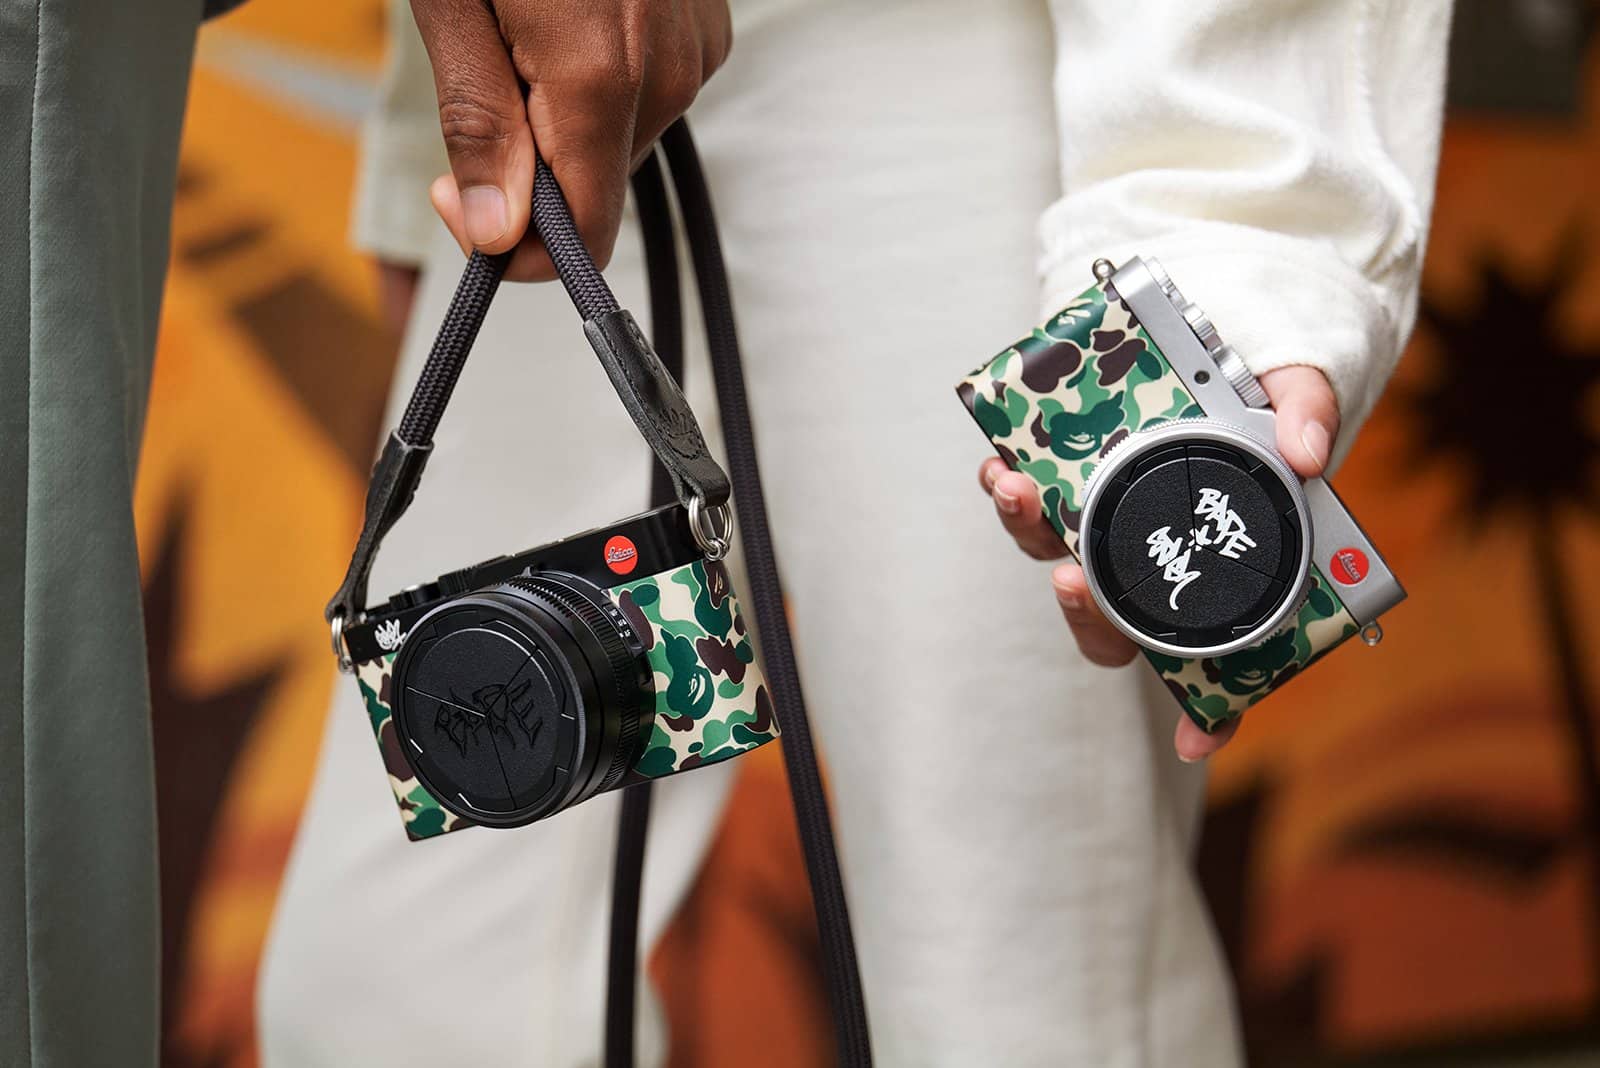 Leica hợp tác với thương hiệu thời trang BAPE ra mắt máy ảnh D-Lux 7 bản giới hạn